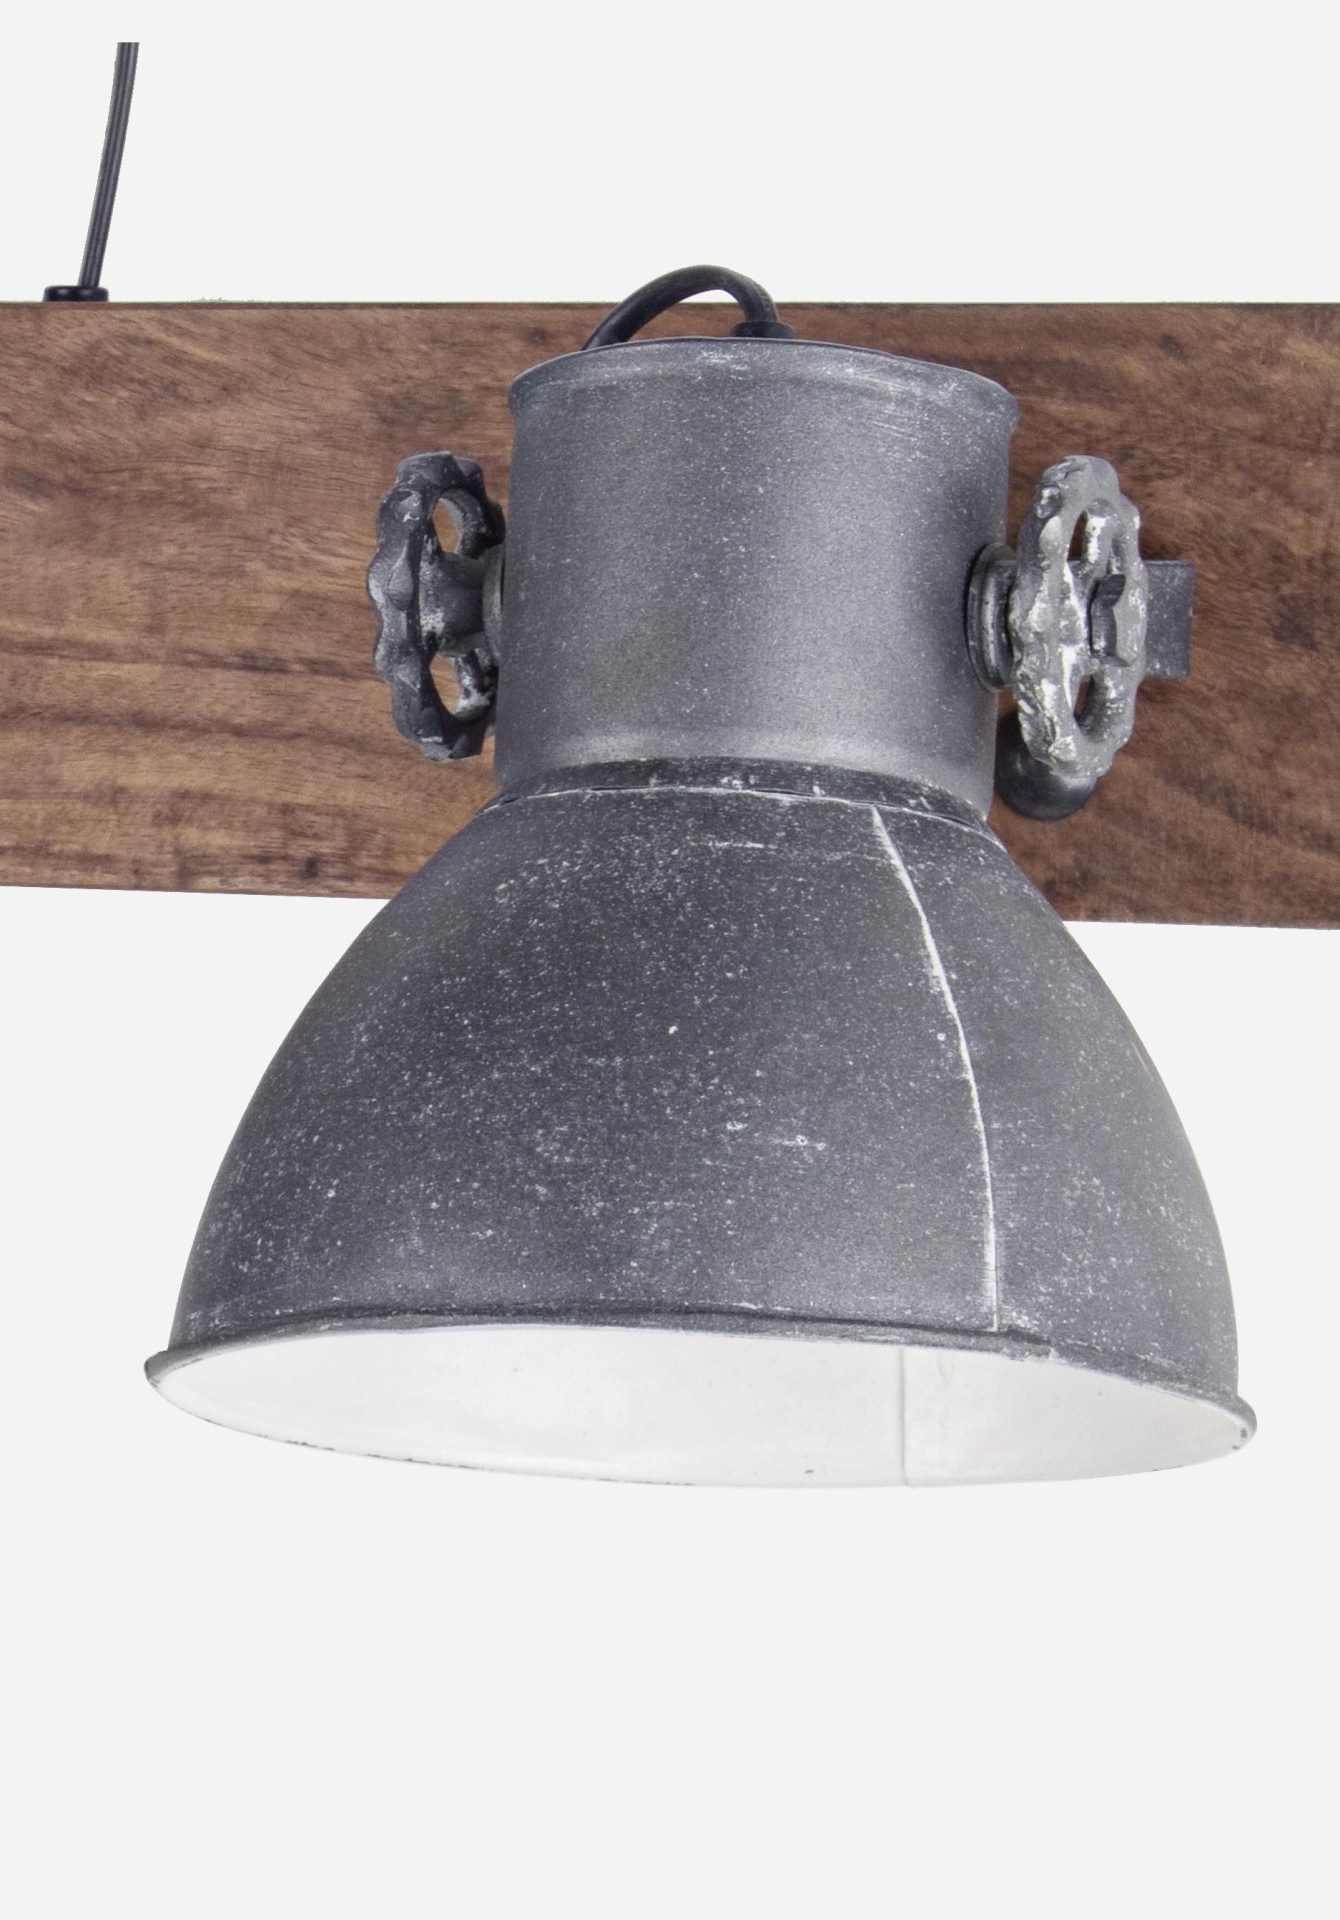 Die Wandleuchte Allique überzeugt mit ihrem klassischen Design. Gefertigt wurde sie aus Mangoholz, welches einen natürlichen Farbton besitzt. Der Lampenschirm ist aus Metall und hat eine graue Farbe. Die Lampe besitzt eine Höhe von 27 cm.